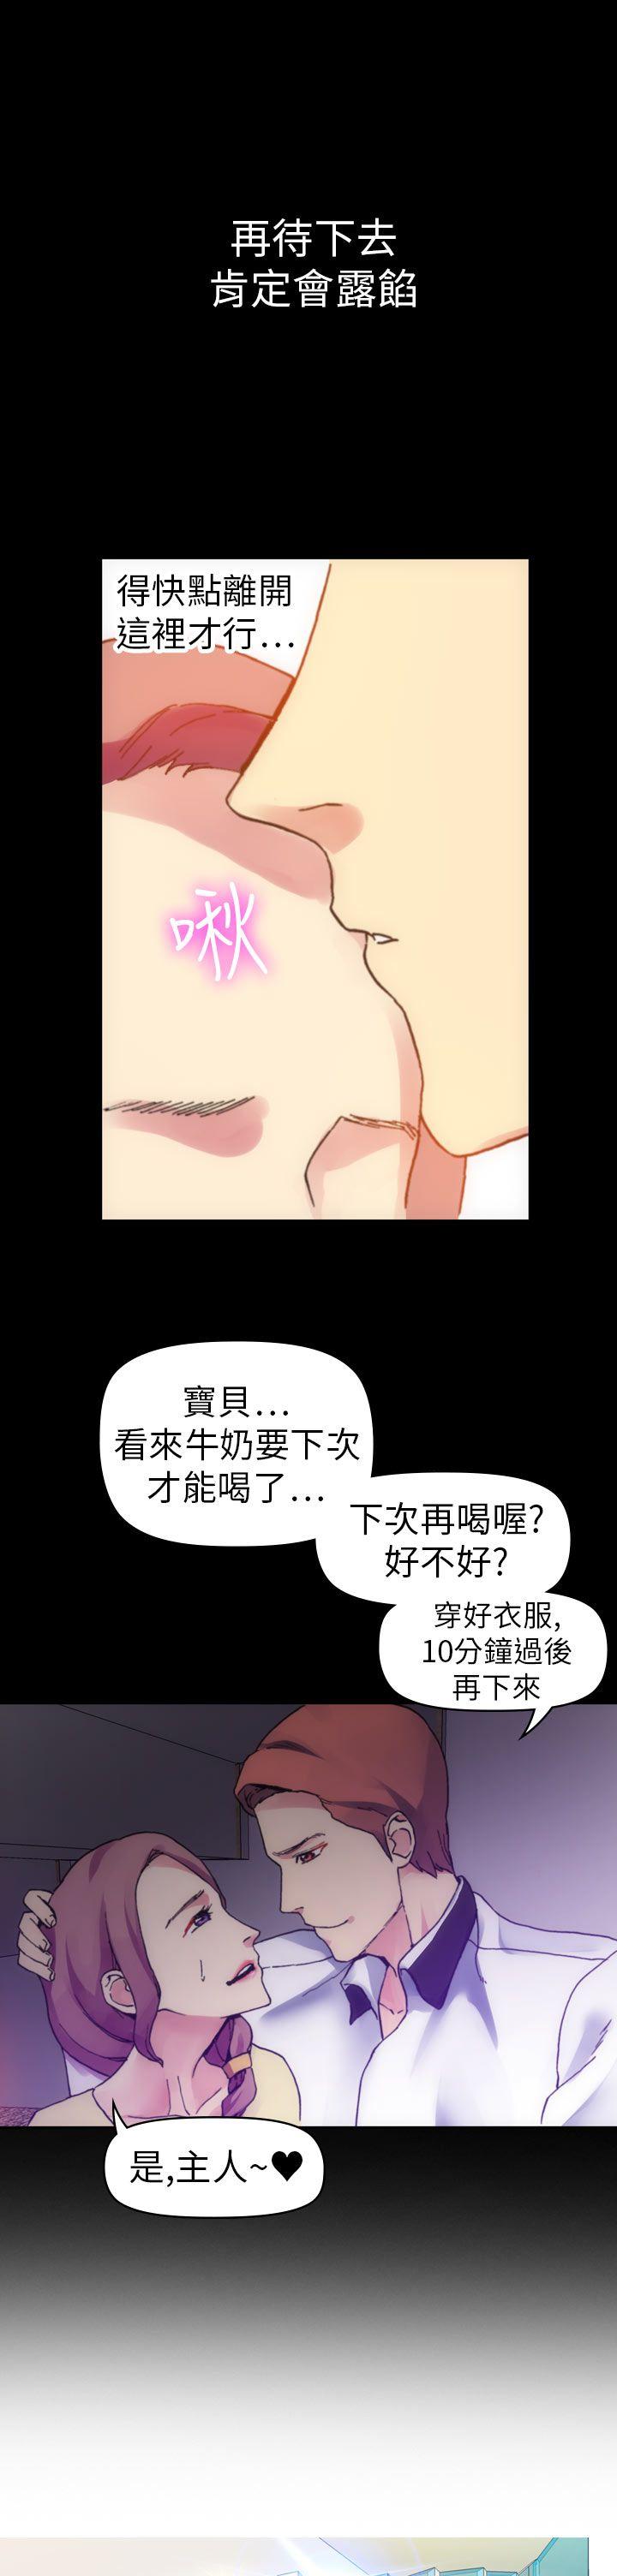 韩国污漫画 幻想中的她(完結) 第12话 21